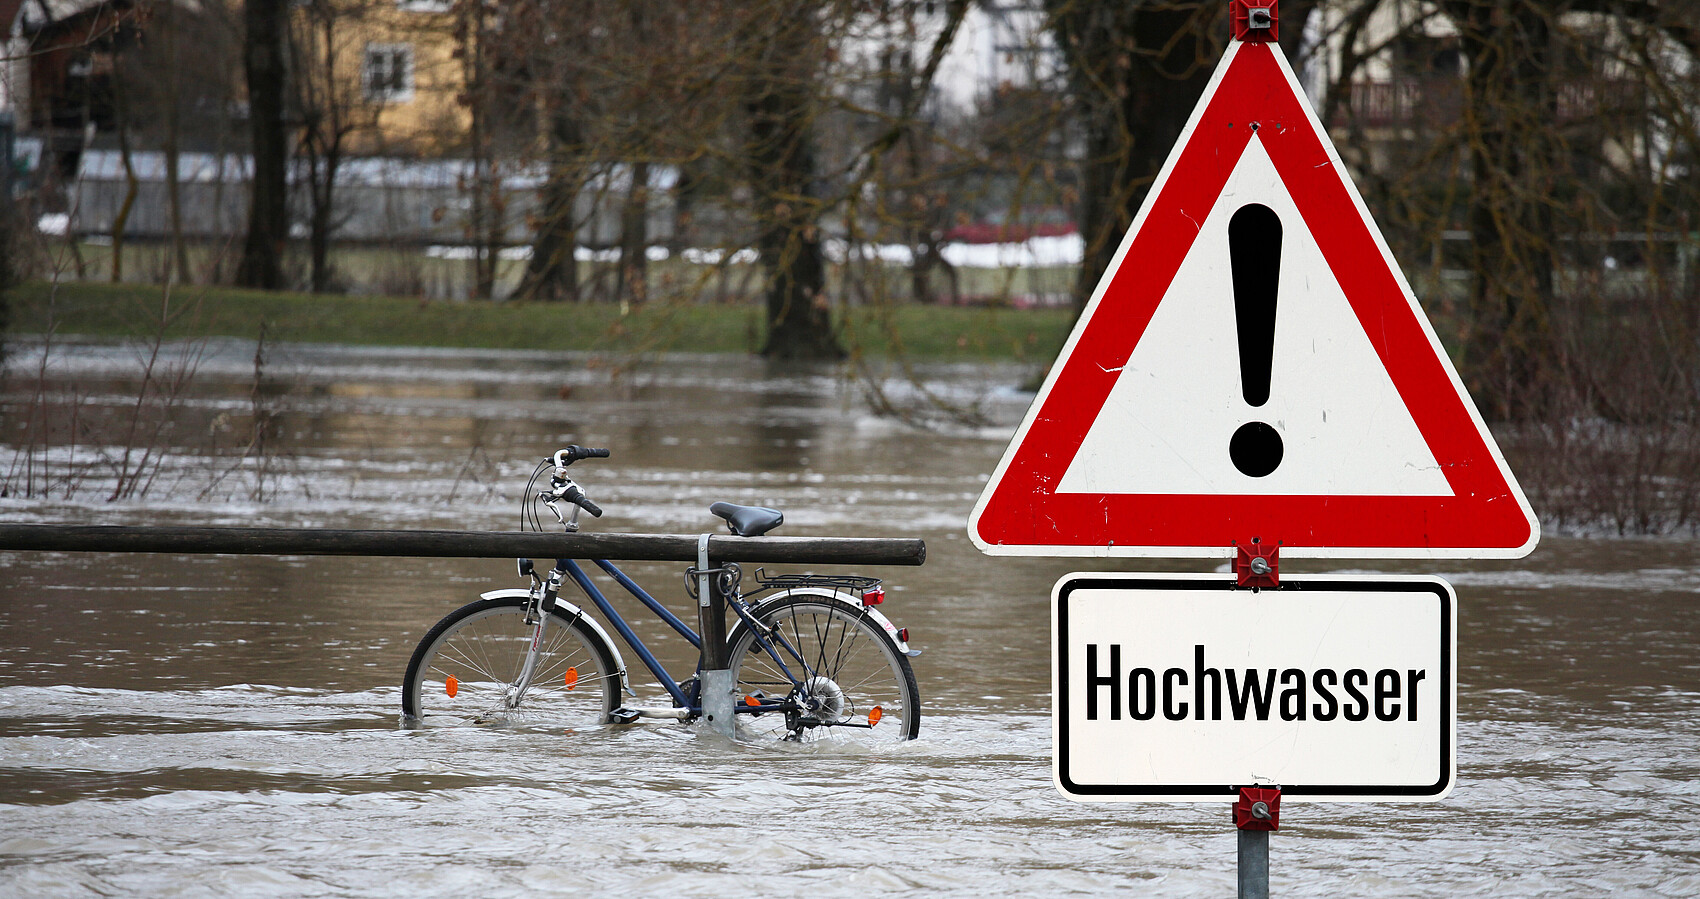 Gefahrenschild mit der Aufschrift "Hochwasser". Im Hintergrund sieht man Hochwasser mit einem Fahrrad